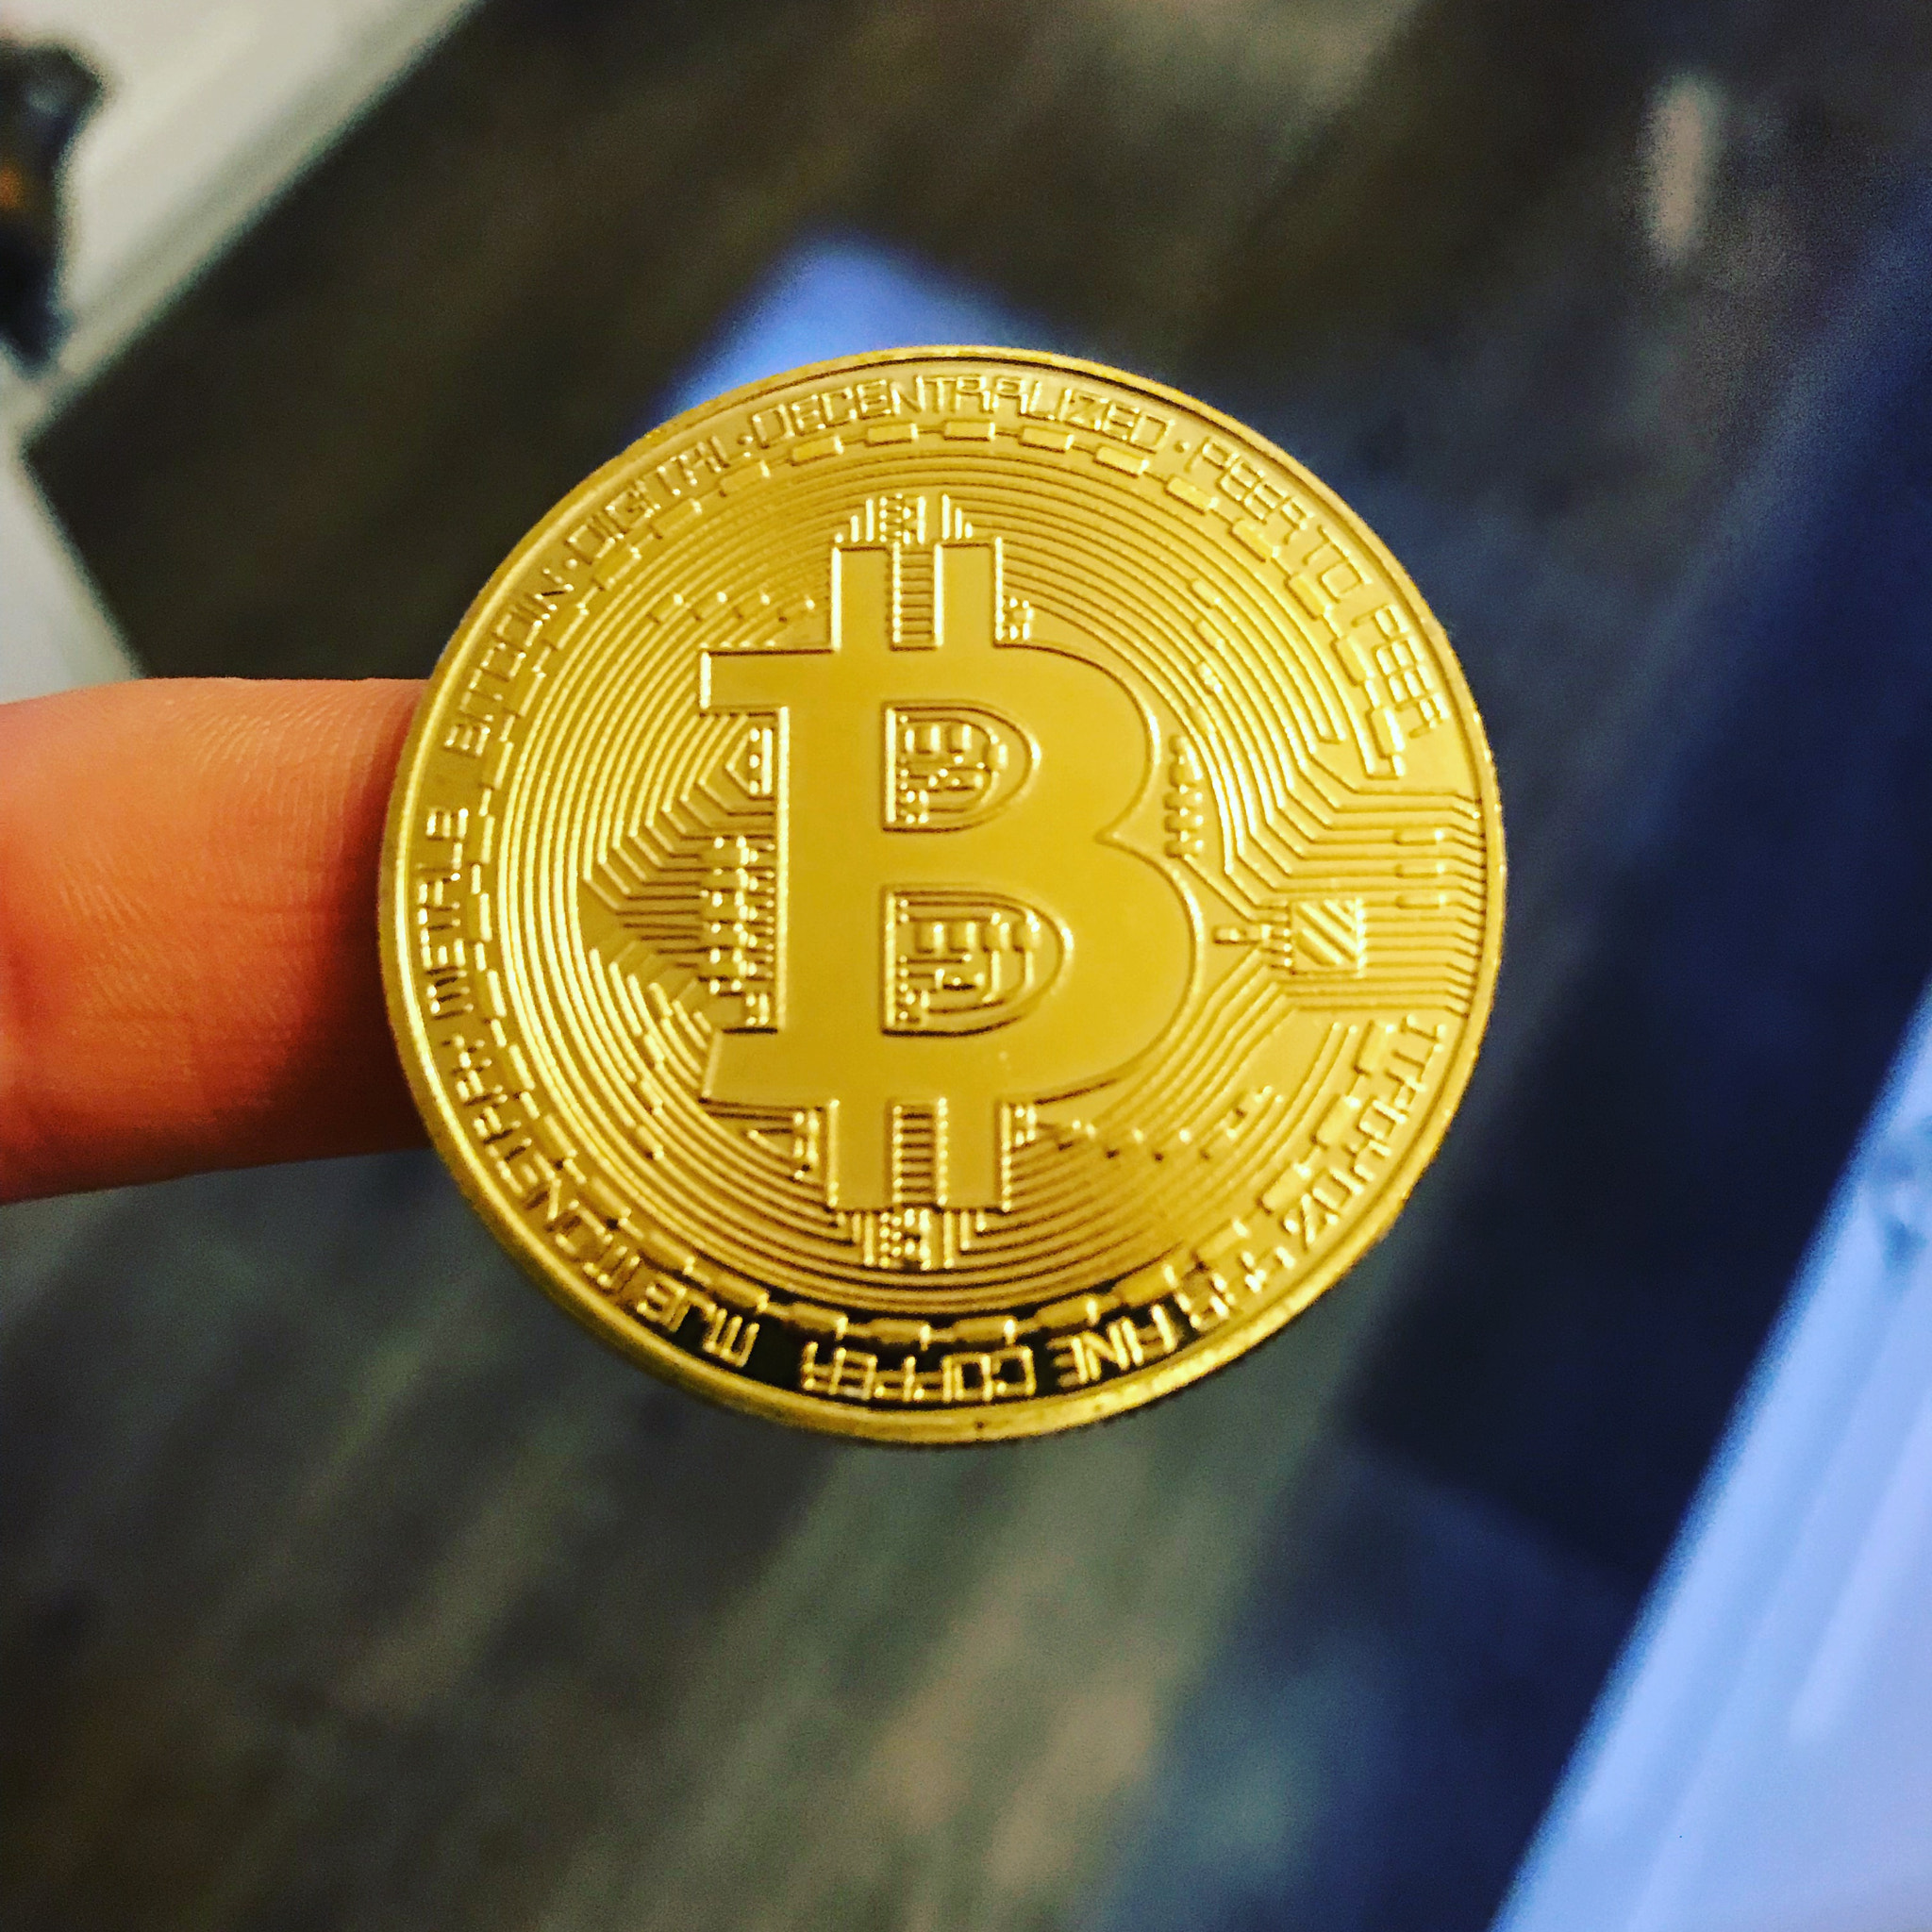 My first bitcoin